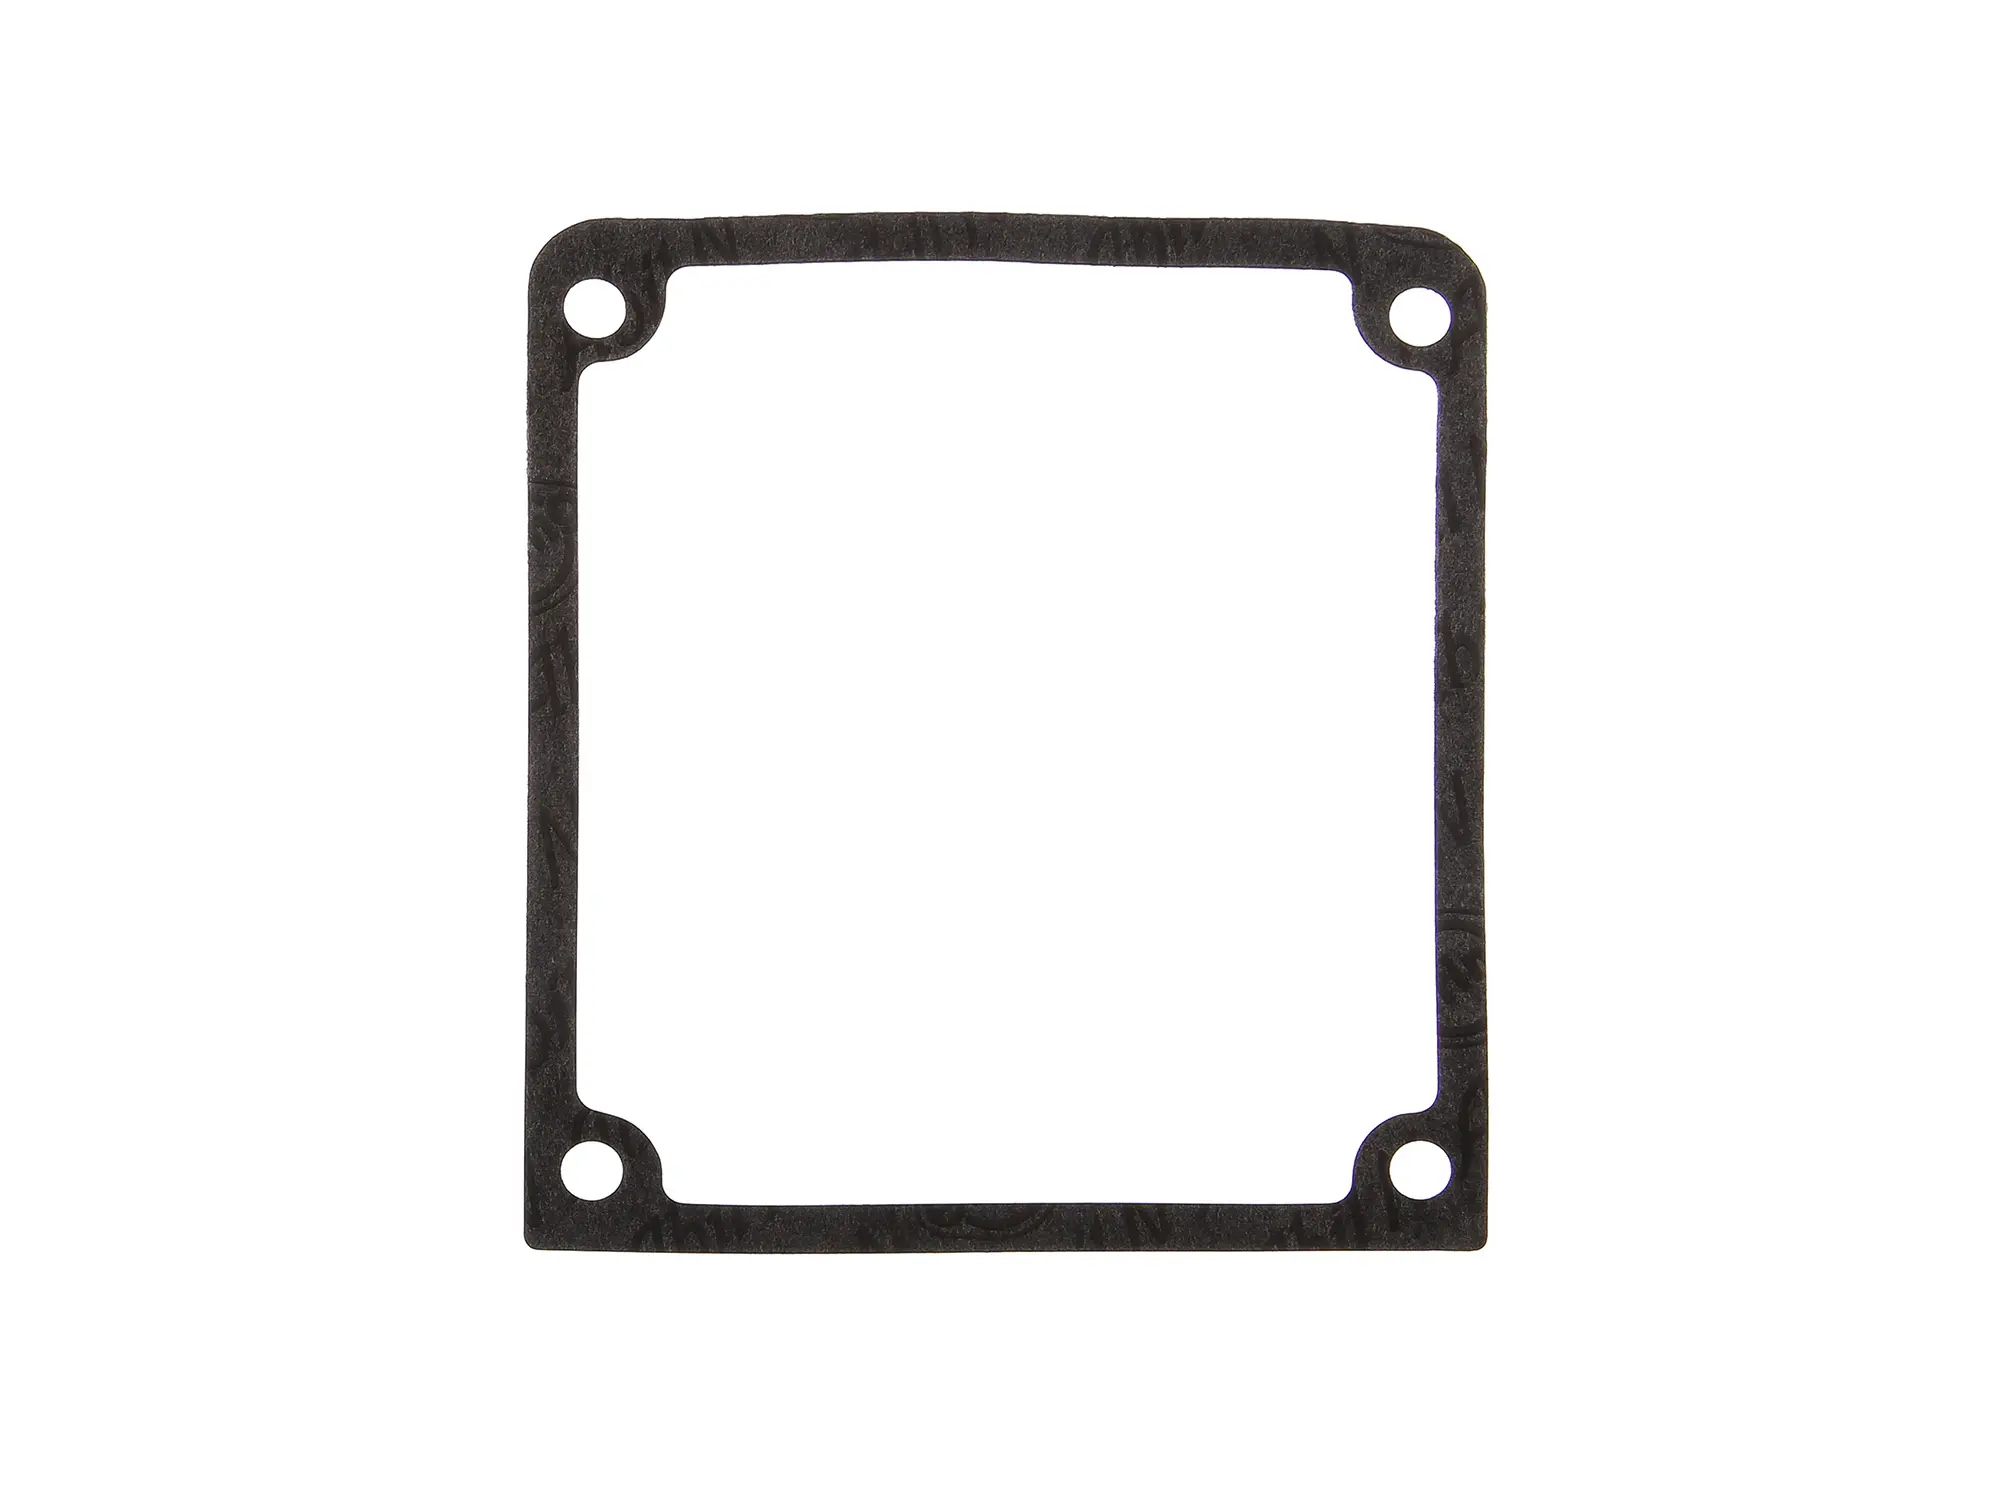 Deckeldichtung - oberer Deckel - Getriebegehäuse - R35-3 (Marke: PLASTANZA / Material ABIL ) (passend für EMW), Art.-Nr.: 10059430 - Bild 1